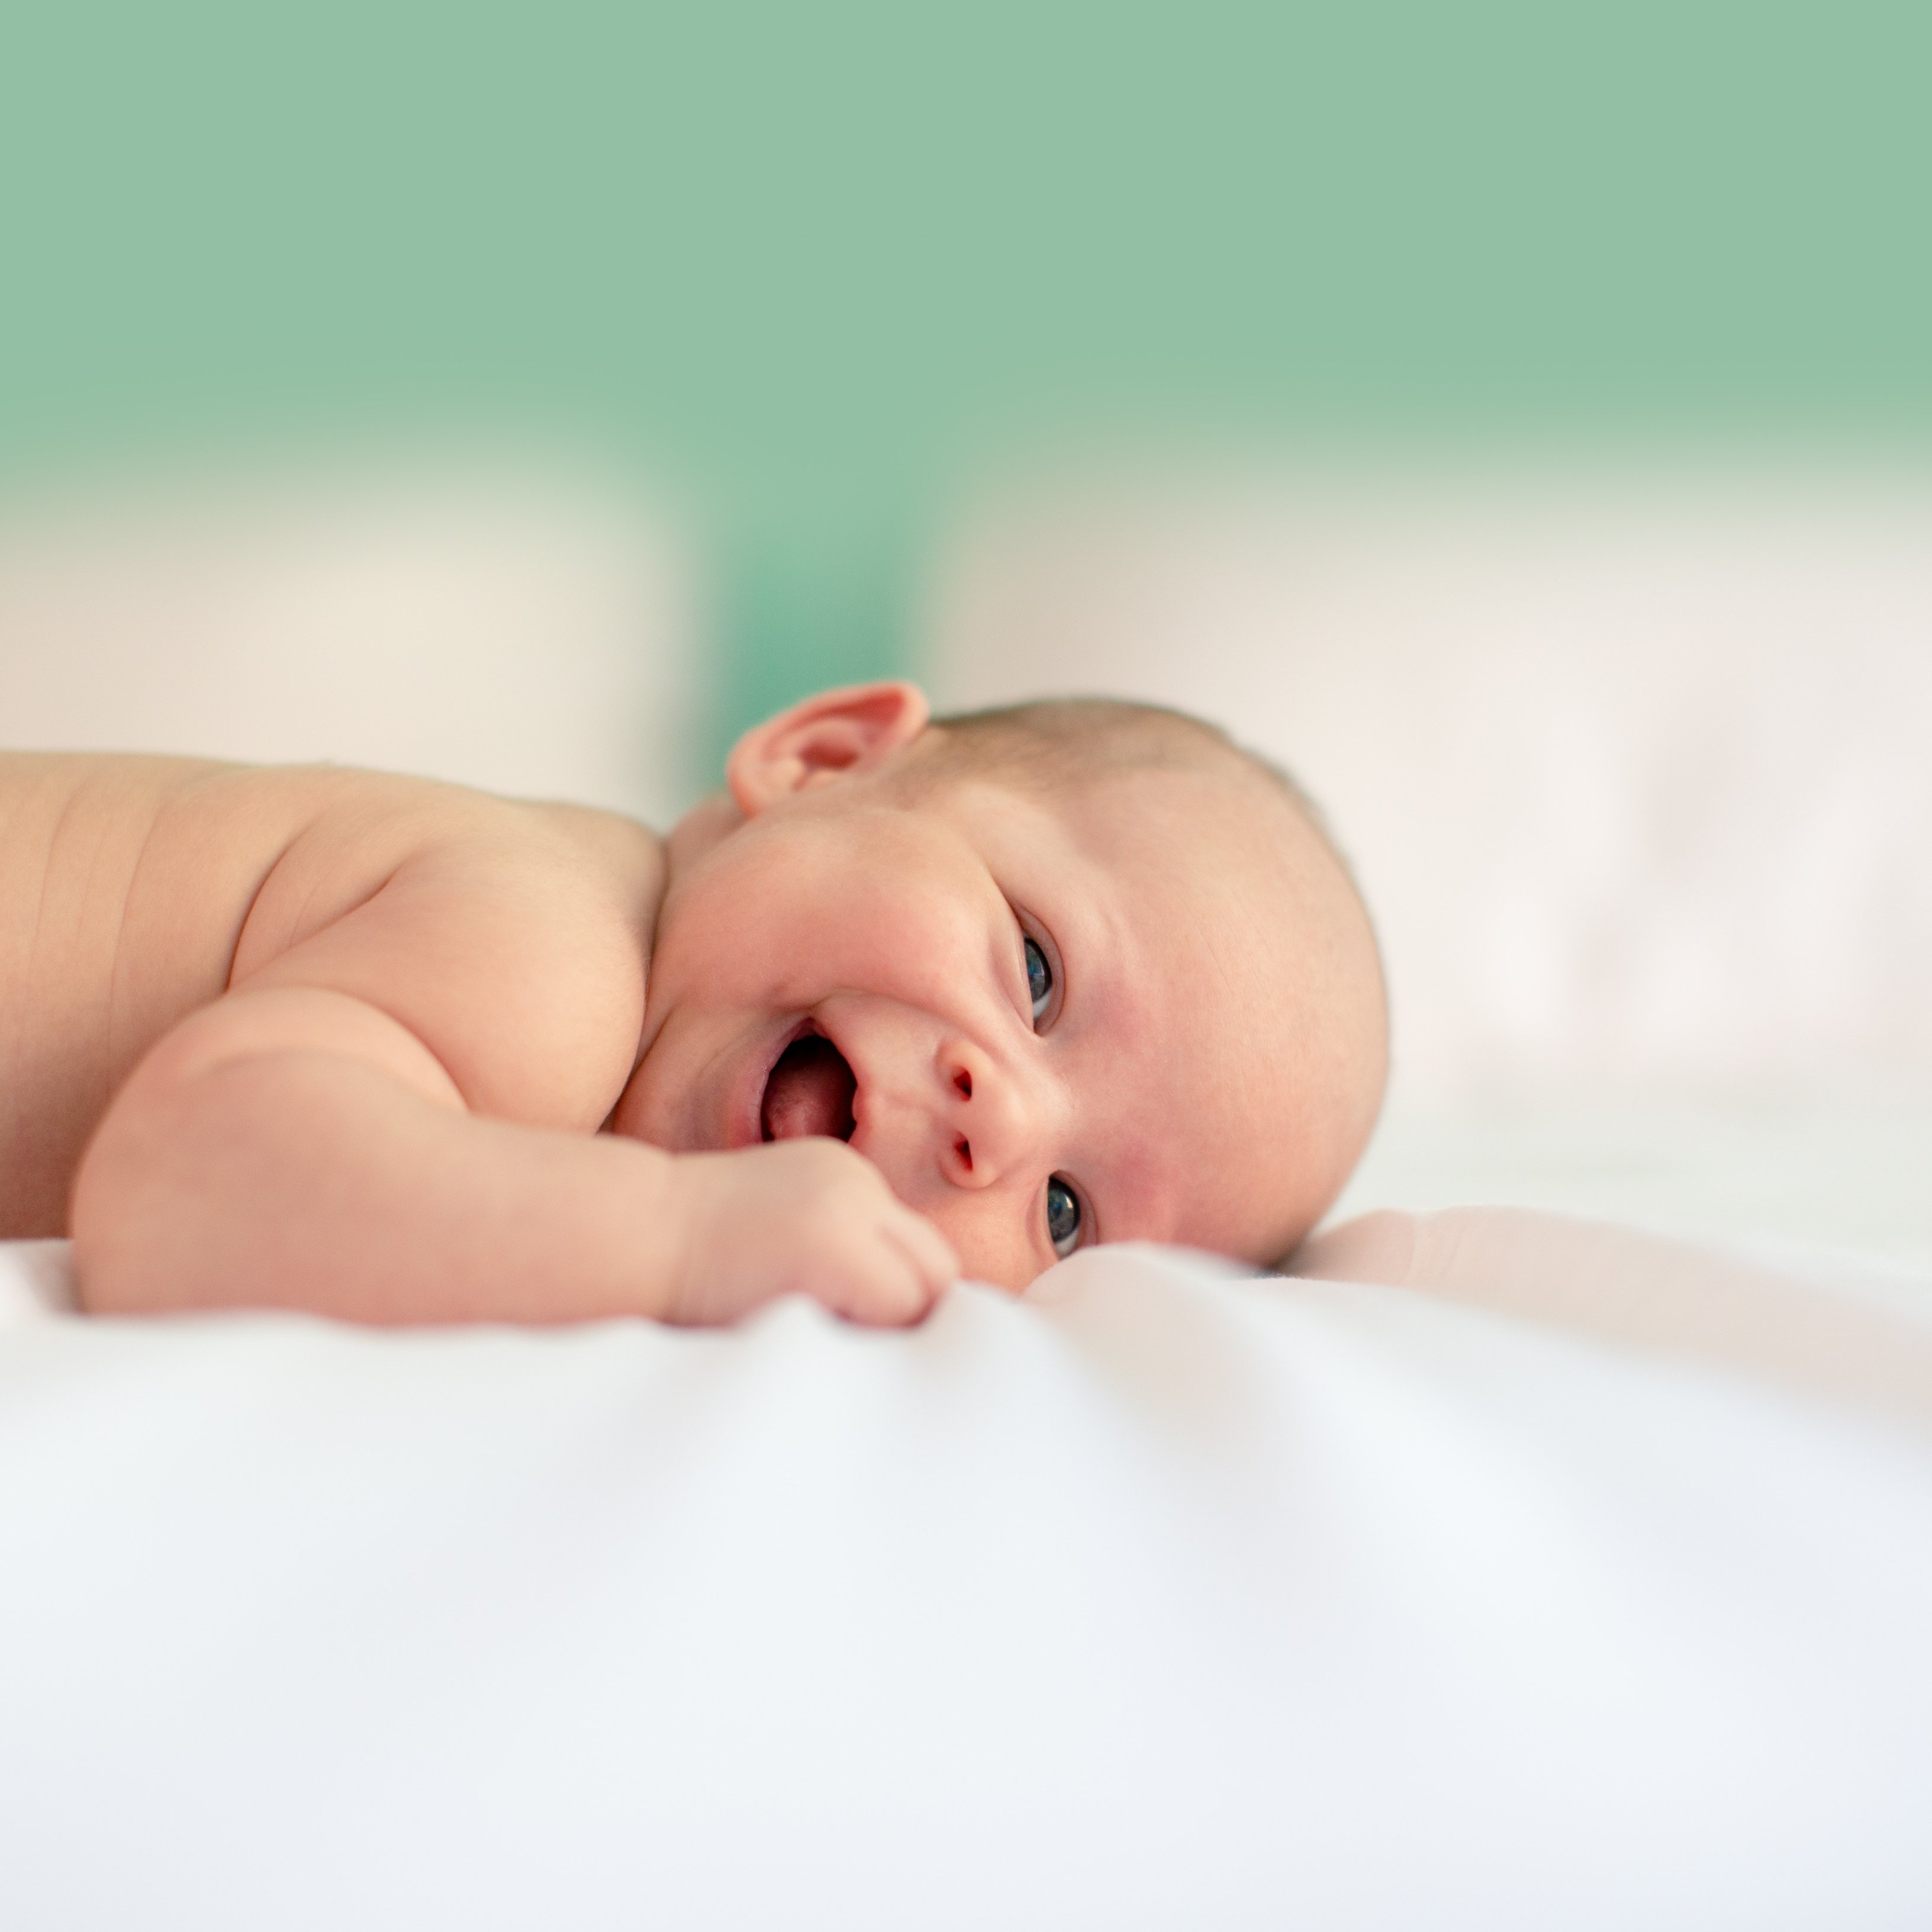 Els nadons que dormen malament podran patir més ansietat i trastorns emocionals